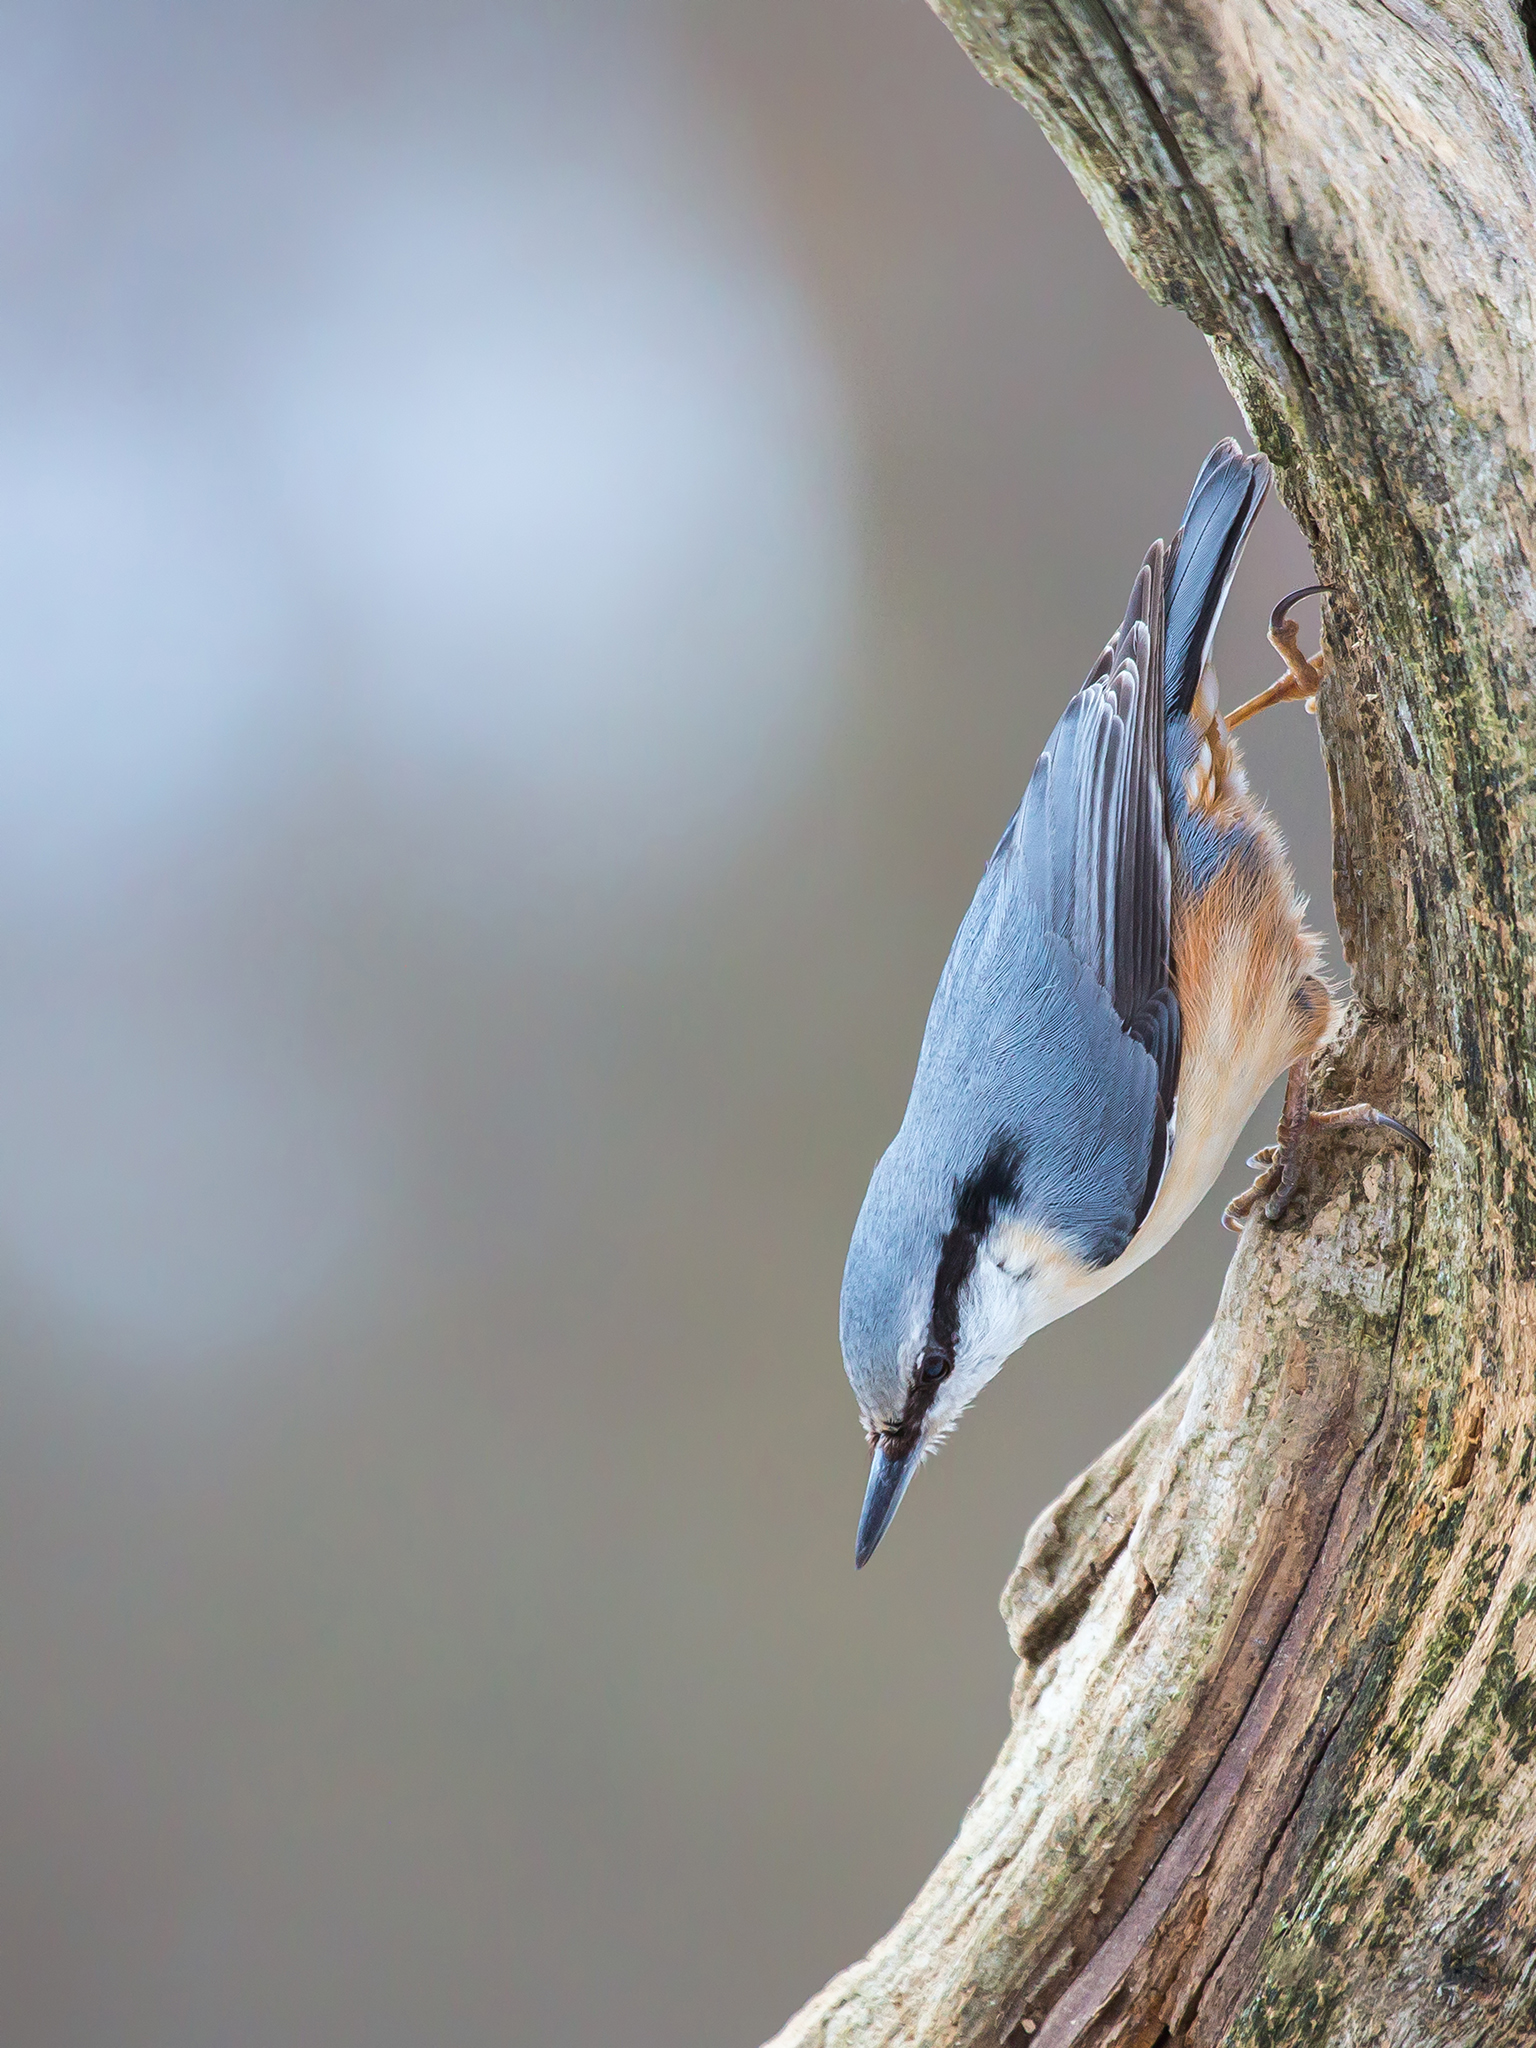   Spettmeis.     Spettmeis er en spurvefugl i spettmeisfamilien. Spettmeisen er gråblå på oversiden og hvit under, med svakt rustgulaktig tone på brystet og magen. Gjennom øyet går det en svart strek. Nebbet er rett, rundt og omtrent like langt som h